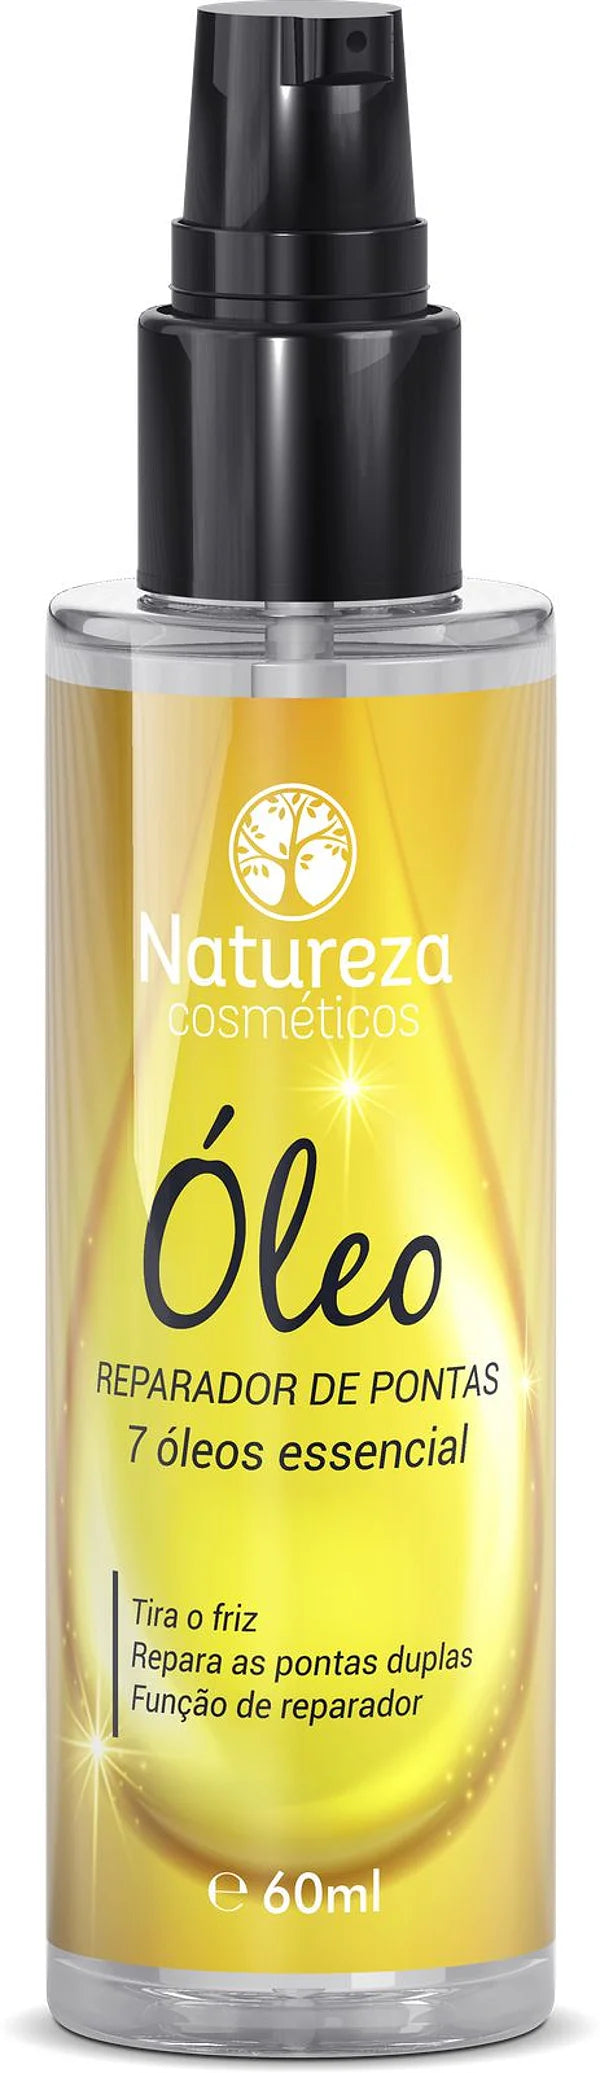 Essential Hair Repair Oil (Natureza Cosmeticos - 7 Essential Oils)